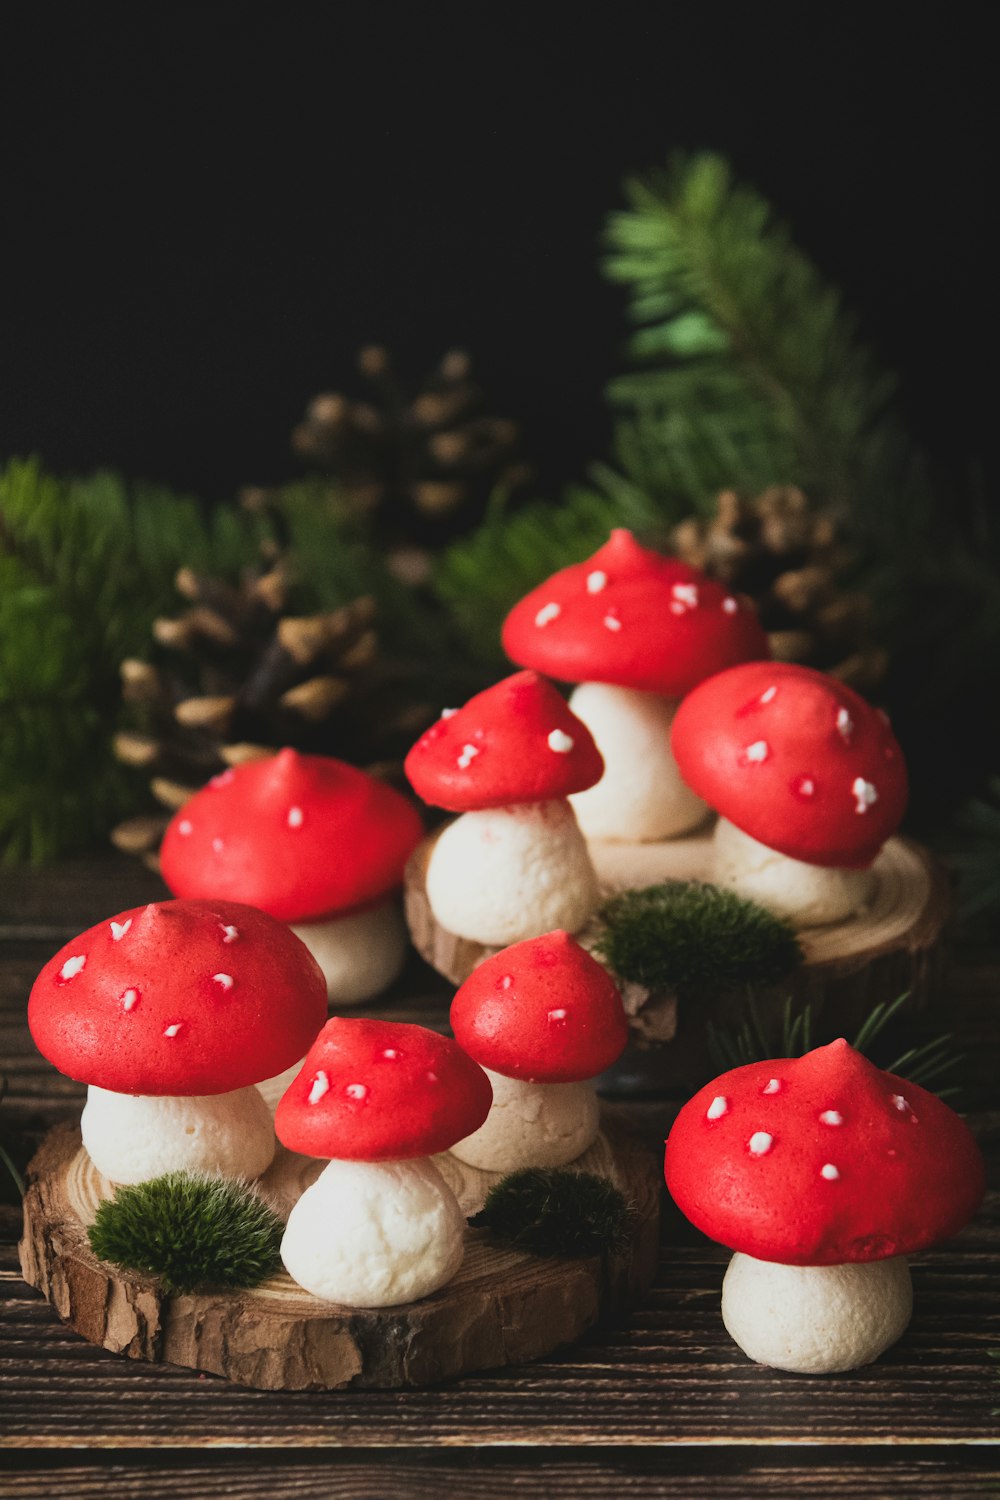 red and white mushrooms in tilt shift lens